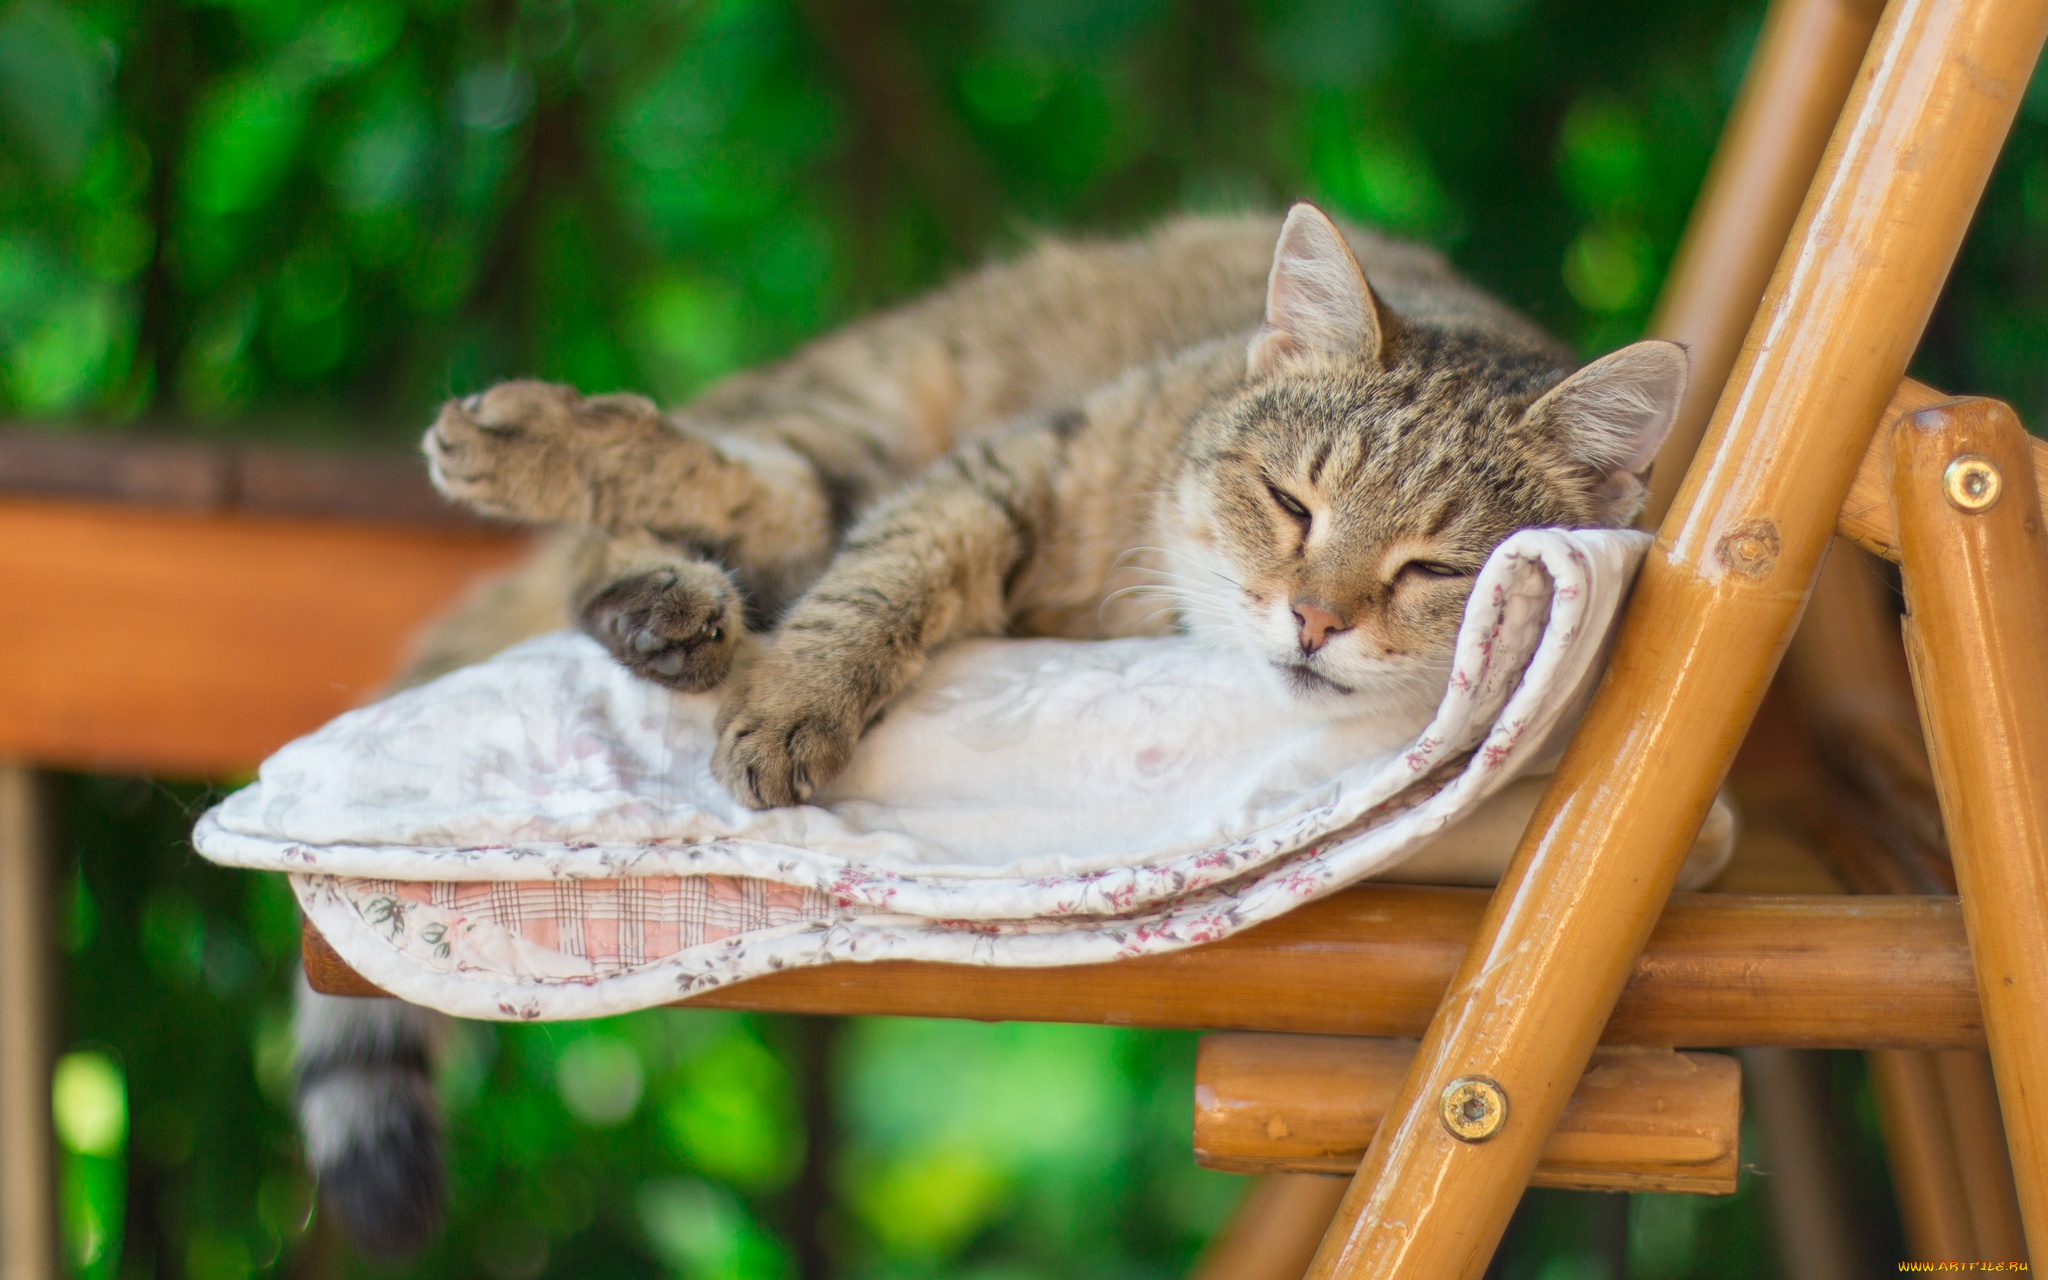 животные, коты, кот, стул, лето, одеяло, спит, настроение, боке, размыто, полосатый, леджит, лень, фон, серый, зеленый, кошка